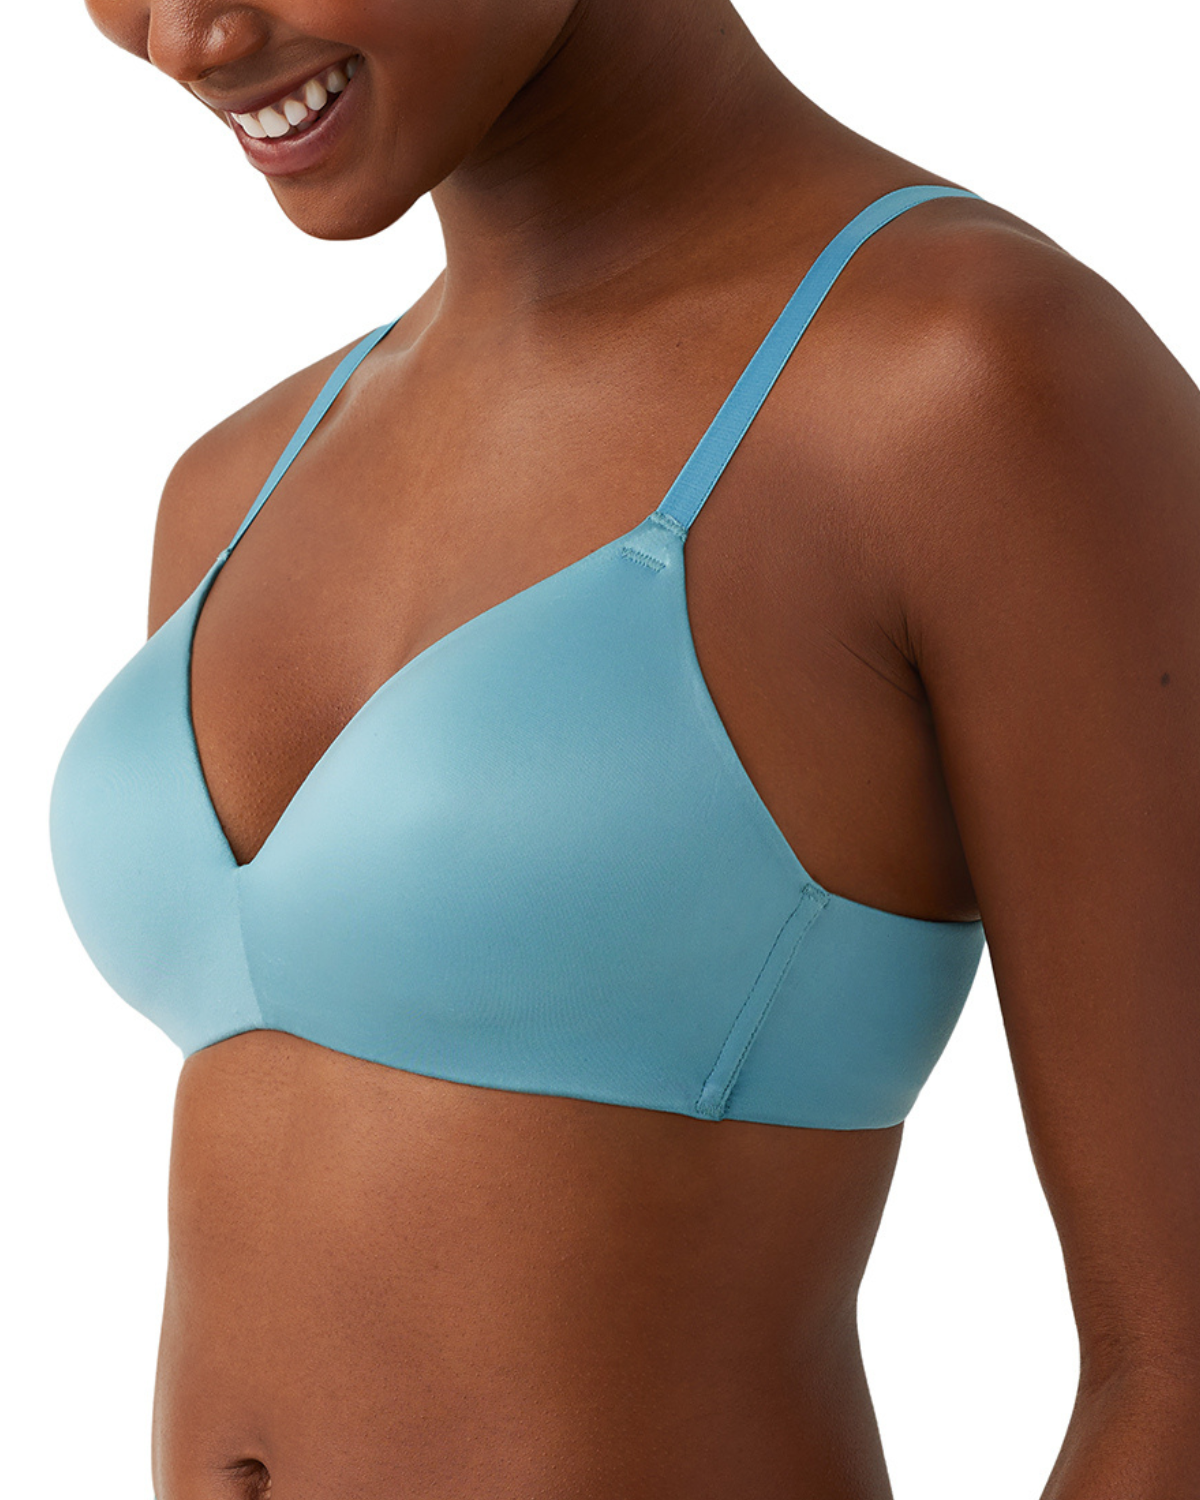 Model wearing a wire free molded bra in light blue